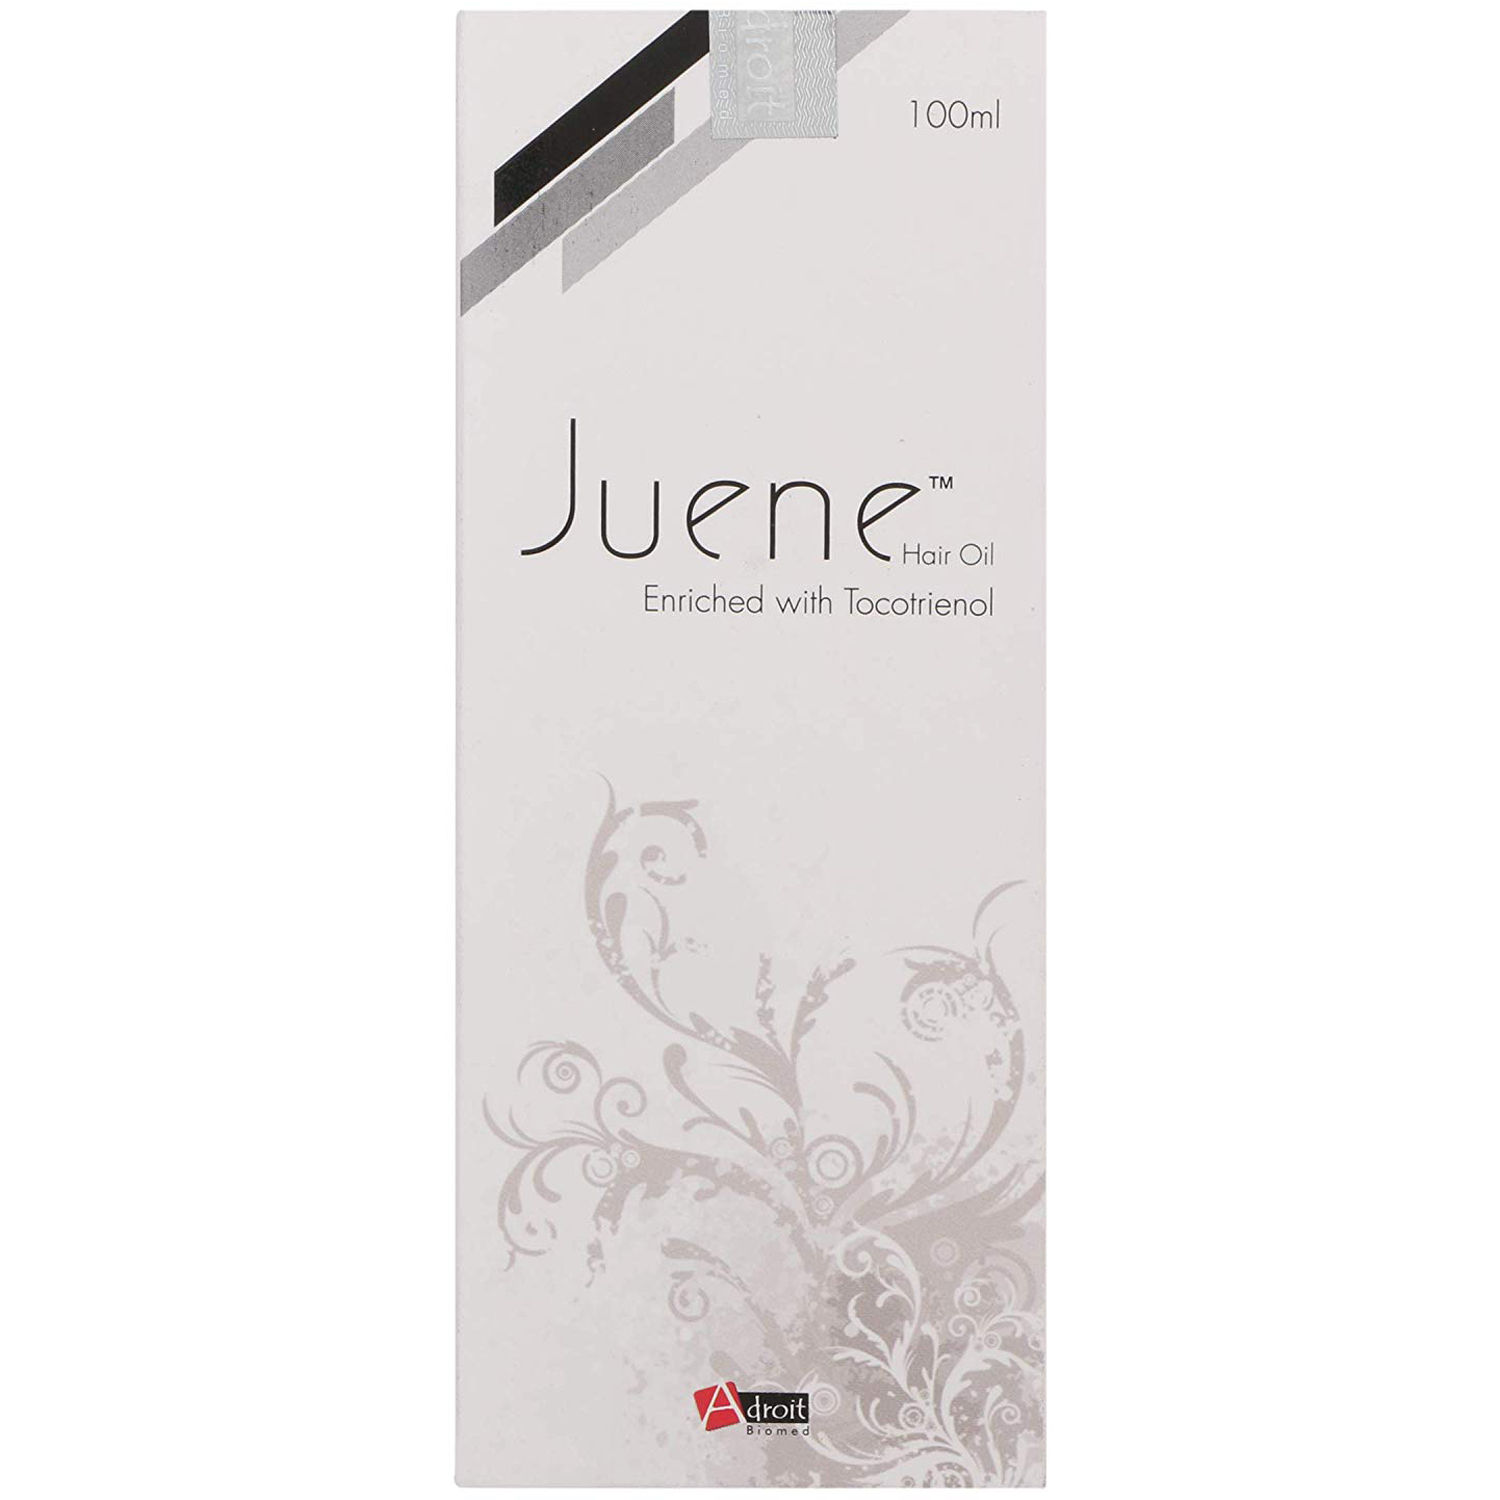 Juene Hair Oil, 100 ml, Pack of 1 